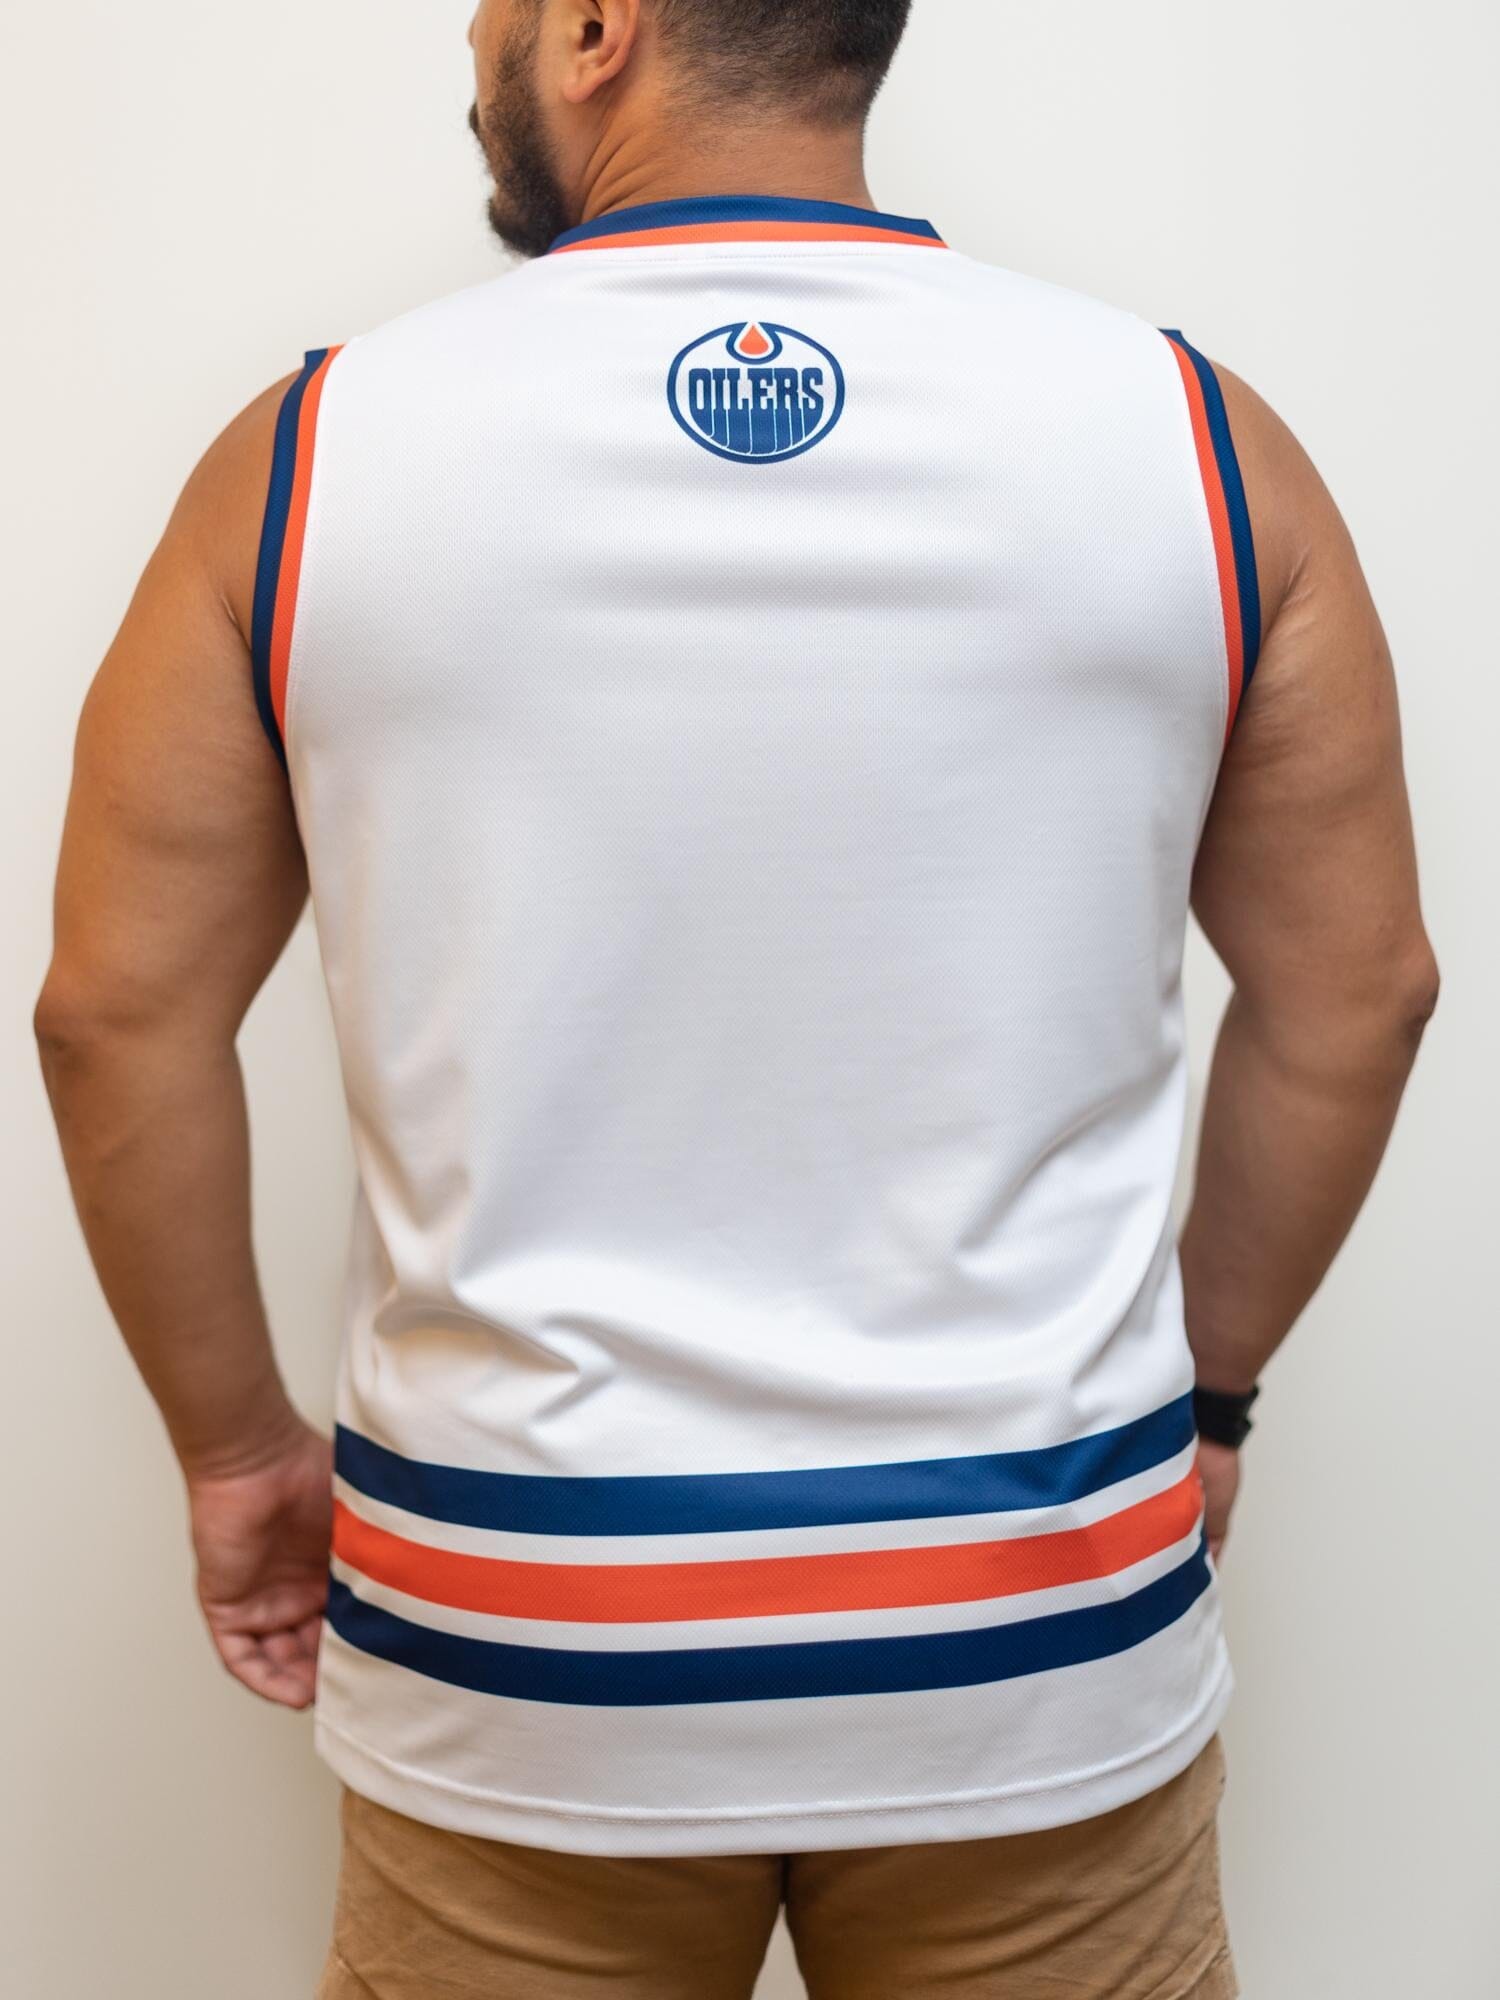 Edmonton Oilers Hockey Hoodie, Blank Oilers Hooded Sweatshirt